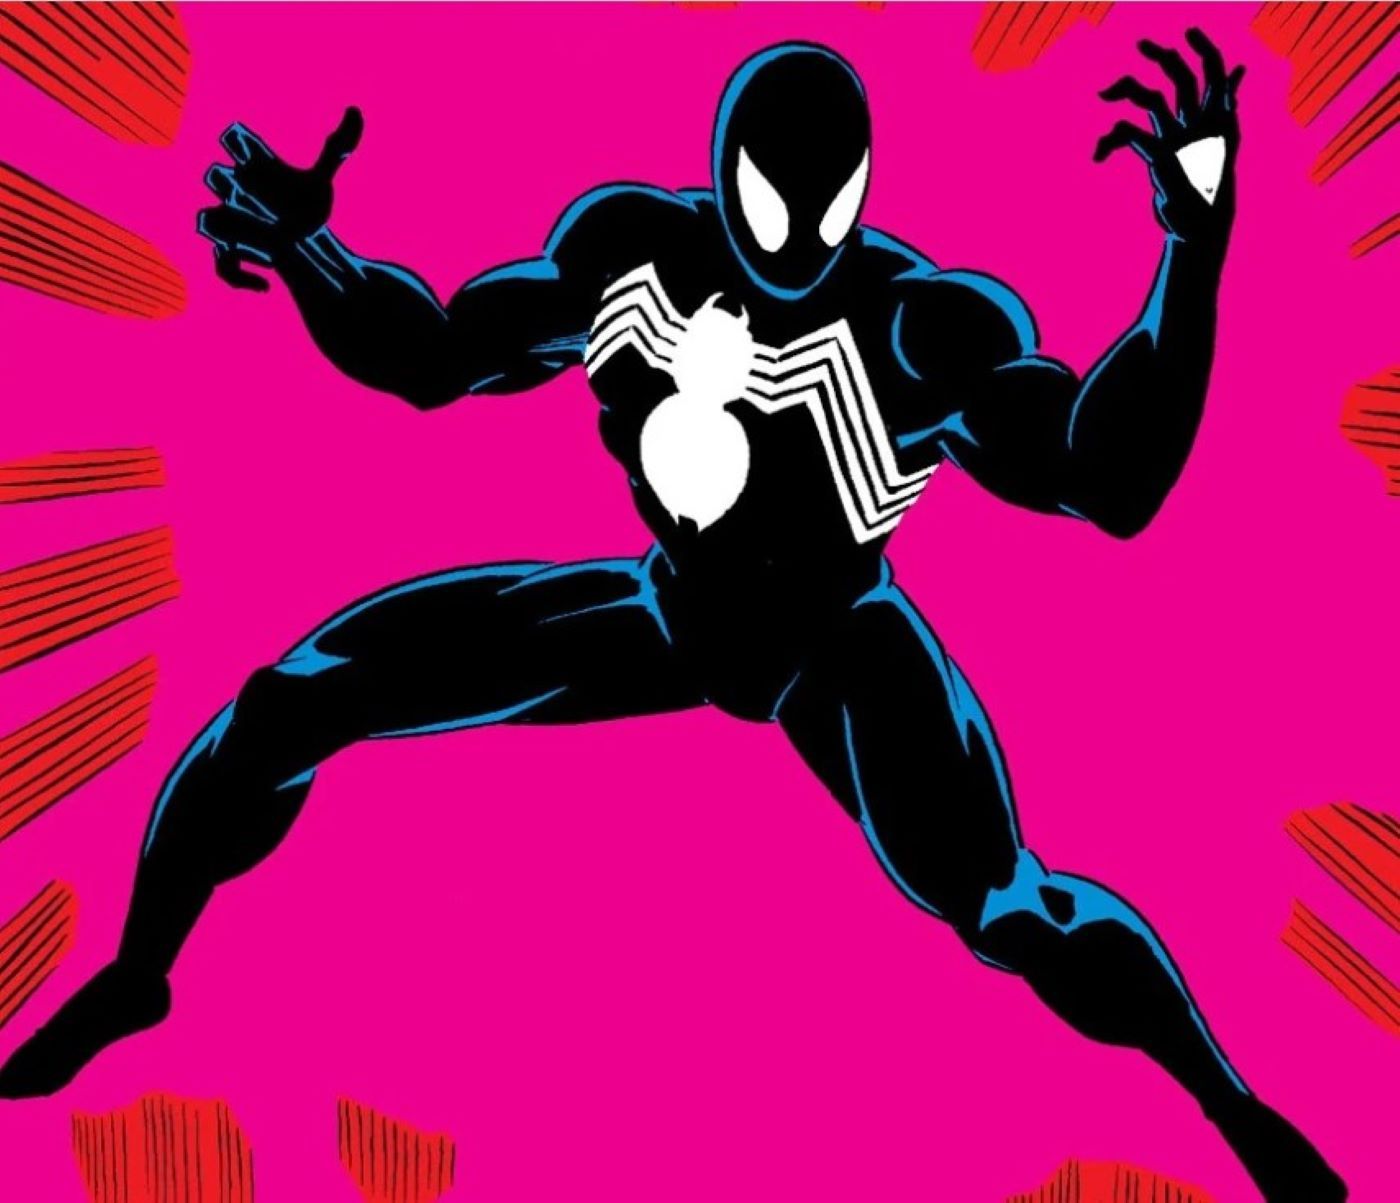 Spider-Man Gets Nightmarish Venom Form in Spine-Chilling Cosplay (Arachnophobes Beware!)